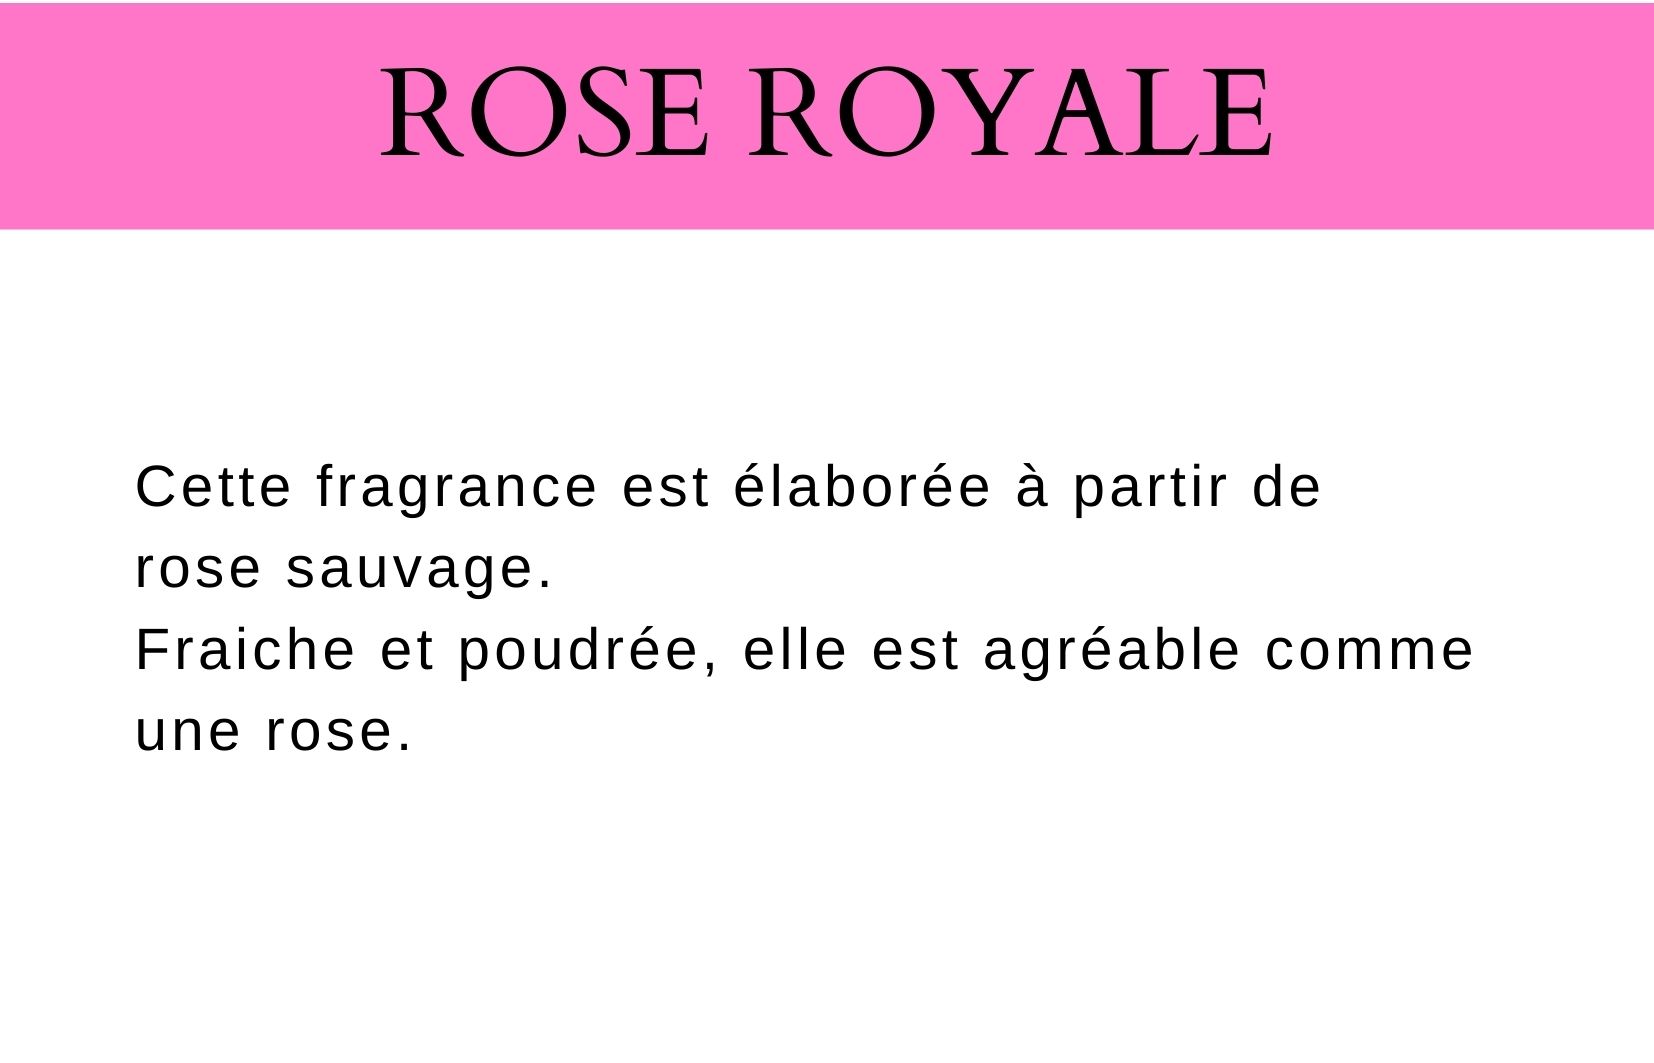 Description parfum royal rose